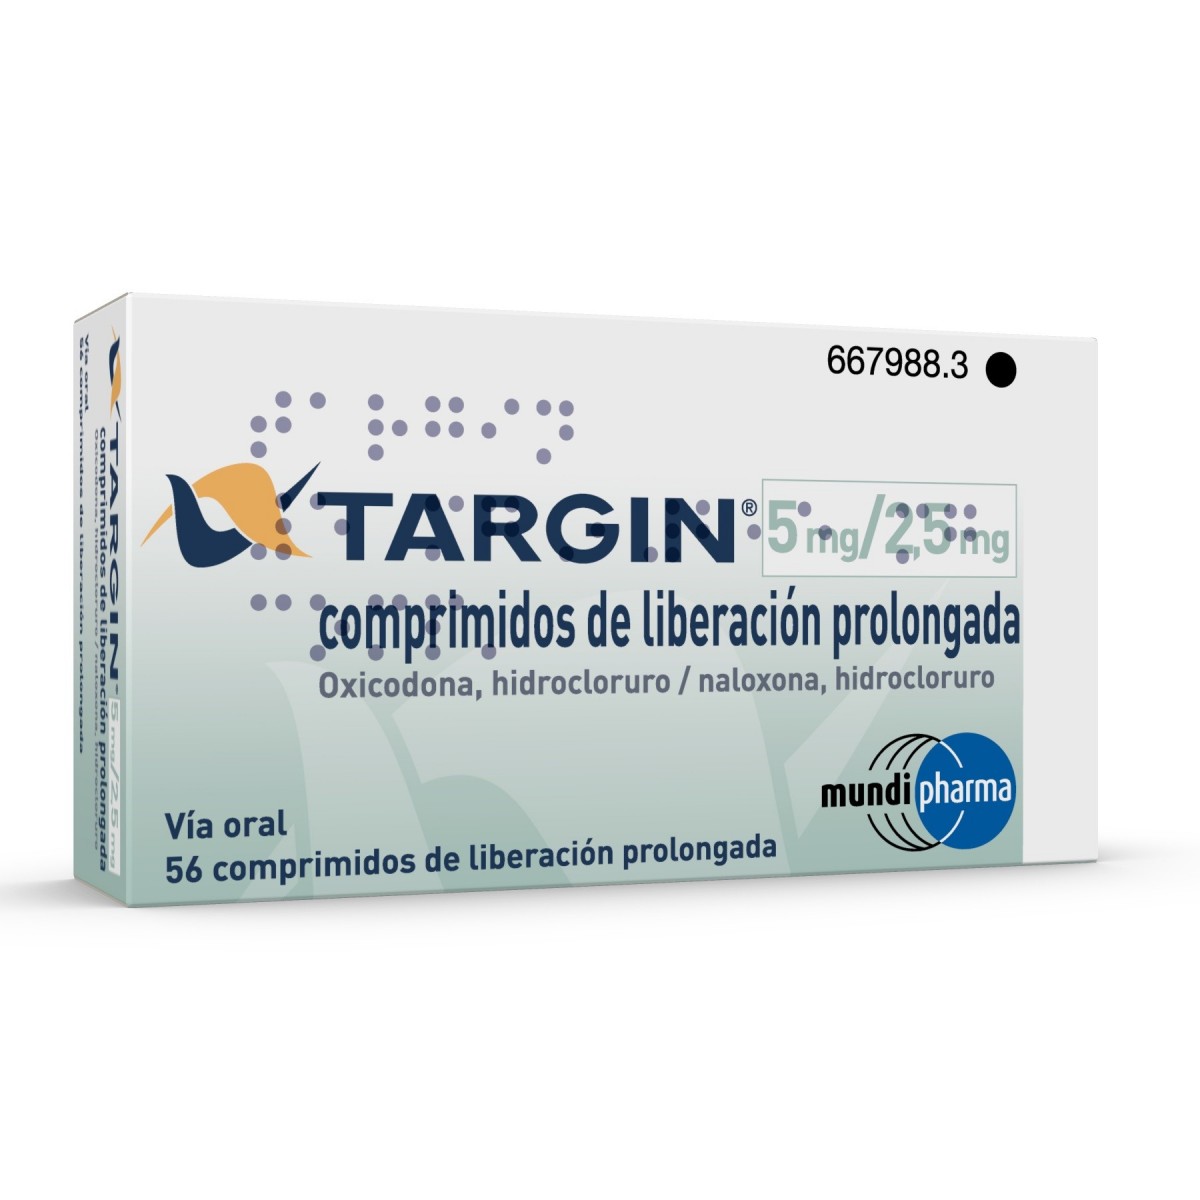 TARGIN 5 mg/2,5 mg COMPRIMIDOS DE LIBERACION PROLONGADA , 56 comprimidos fotografía del envase.